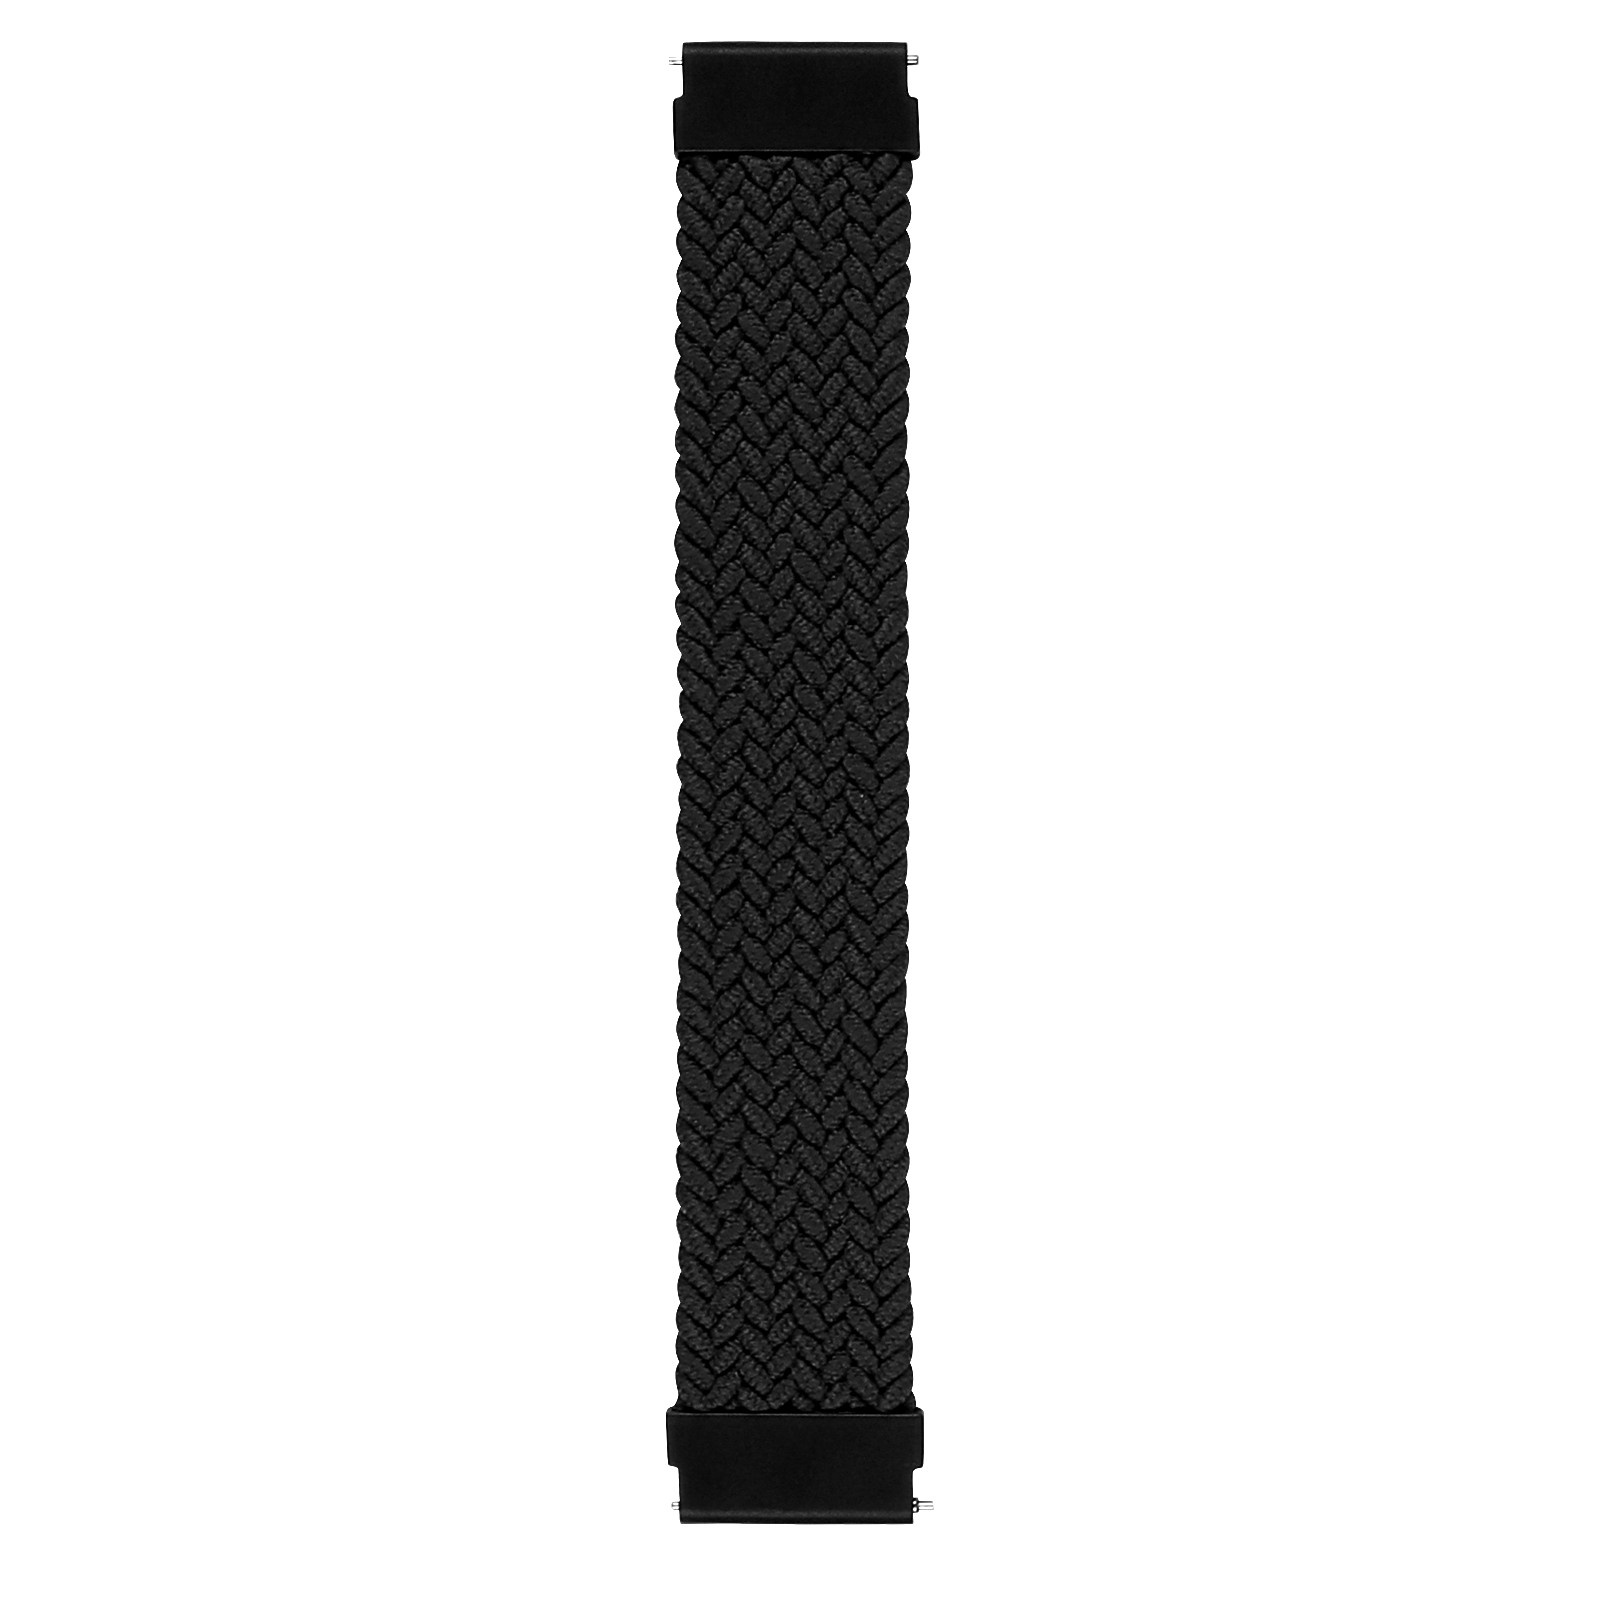 Samsung Galaxy Watch Nylon Geflochtenes Solo Loop - schwarz